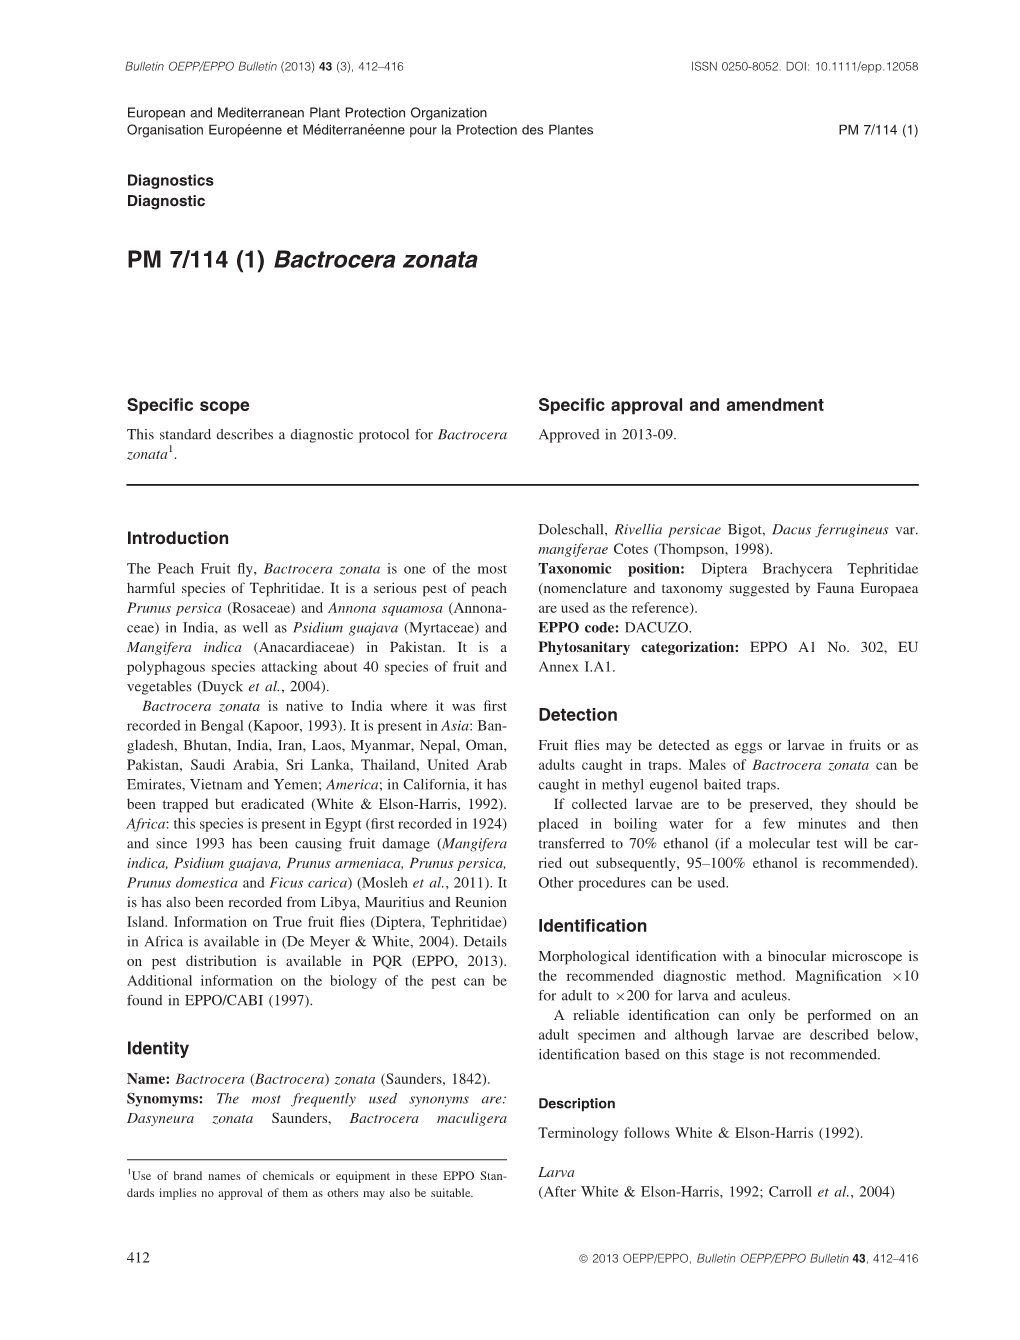 PM 7/114 (1) Bactrocera Zonata